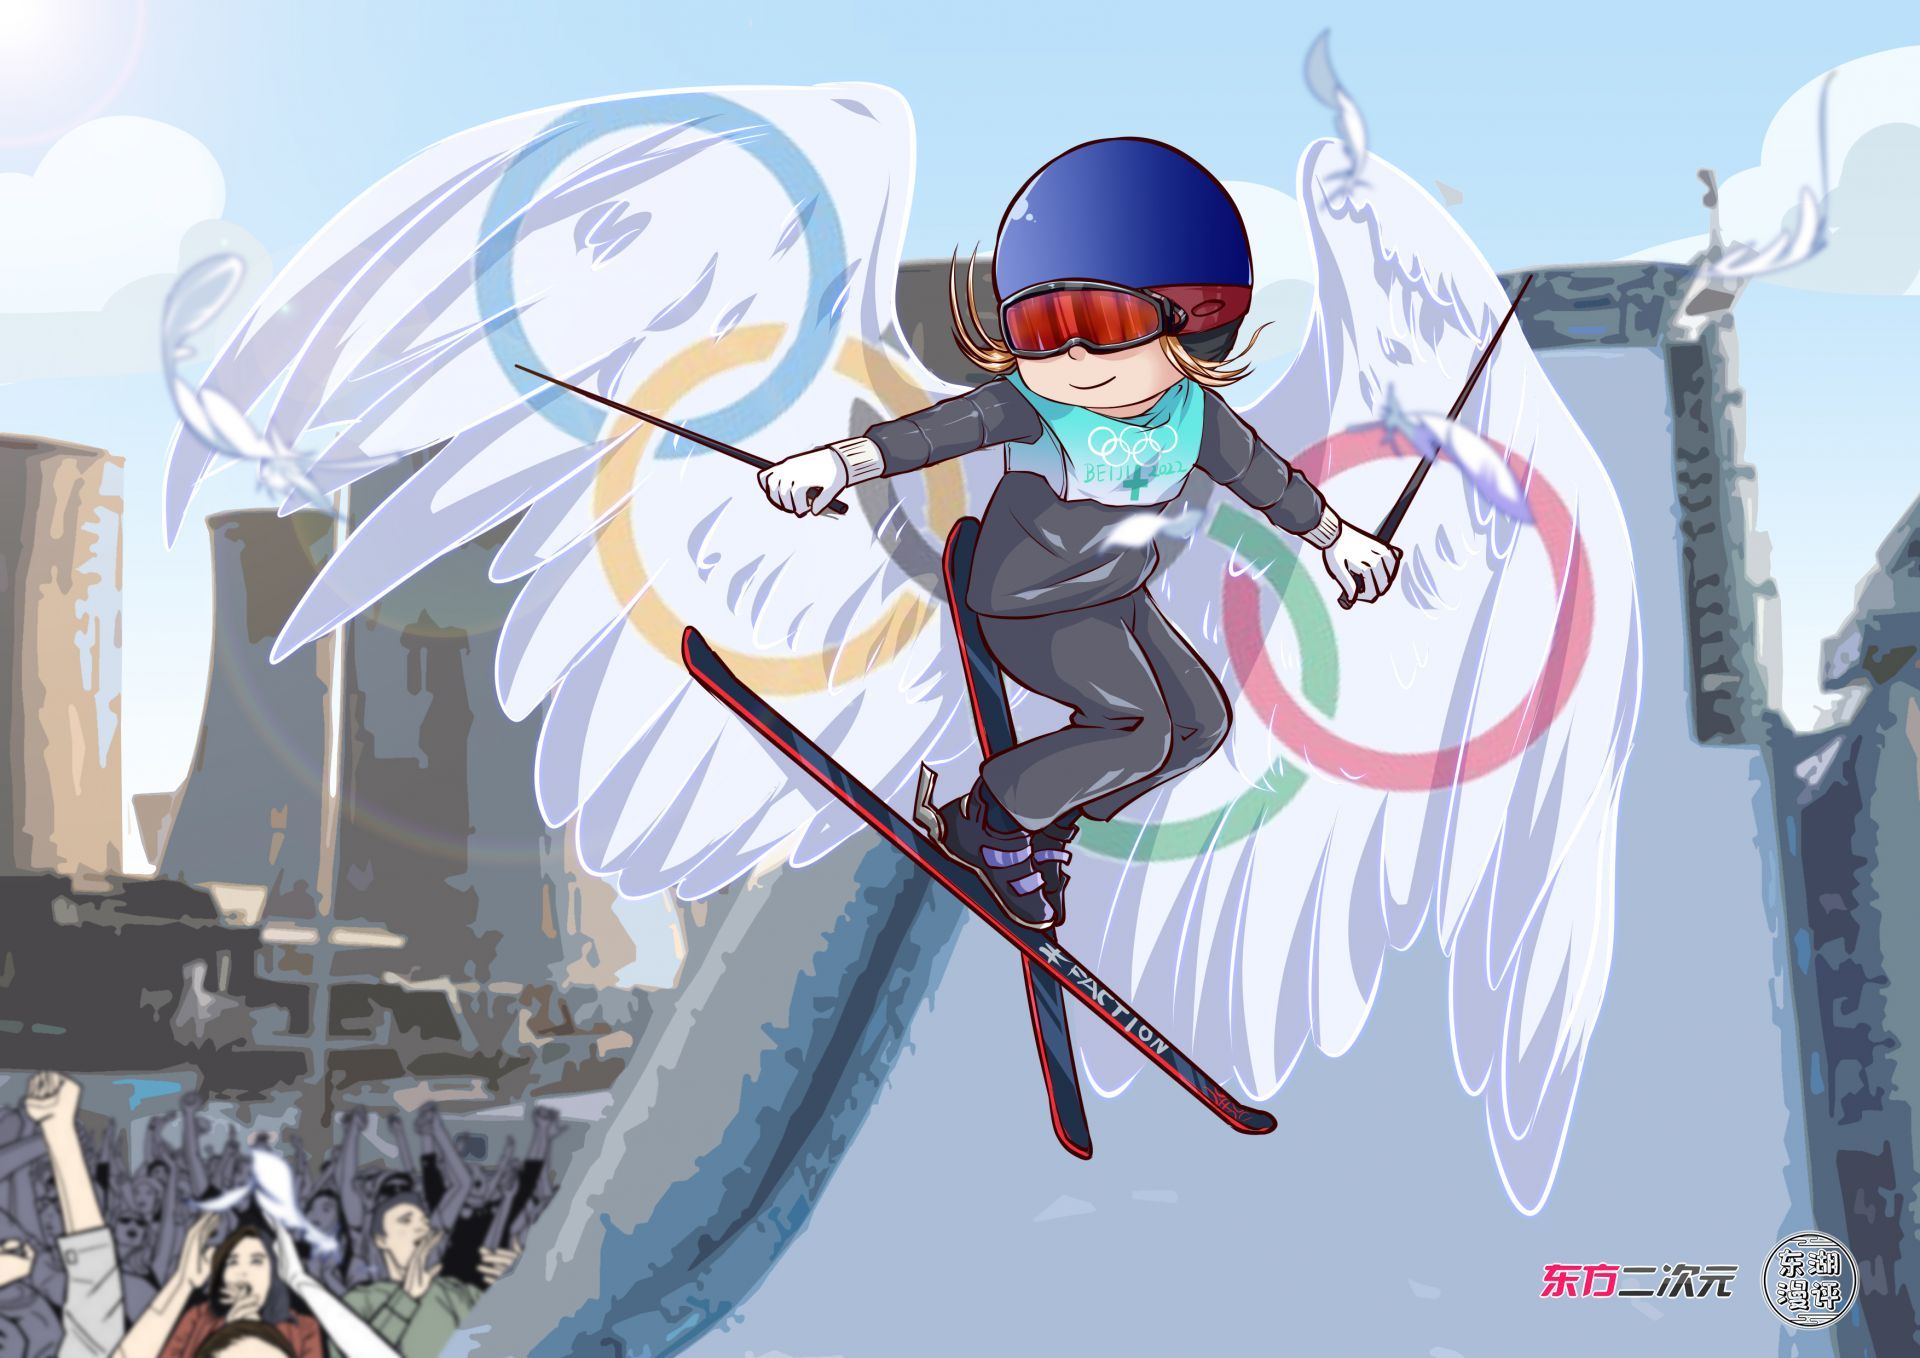 绘图:徐宇瑨(东方二次元)本网评论员  沈素芬近日,北京冬奥会单板滑雪